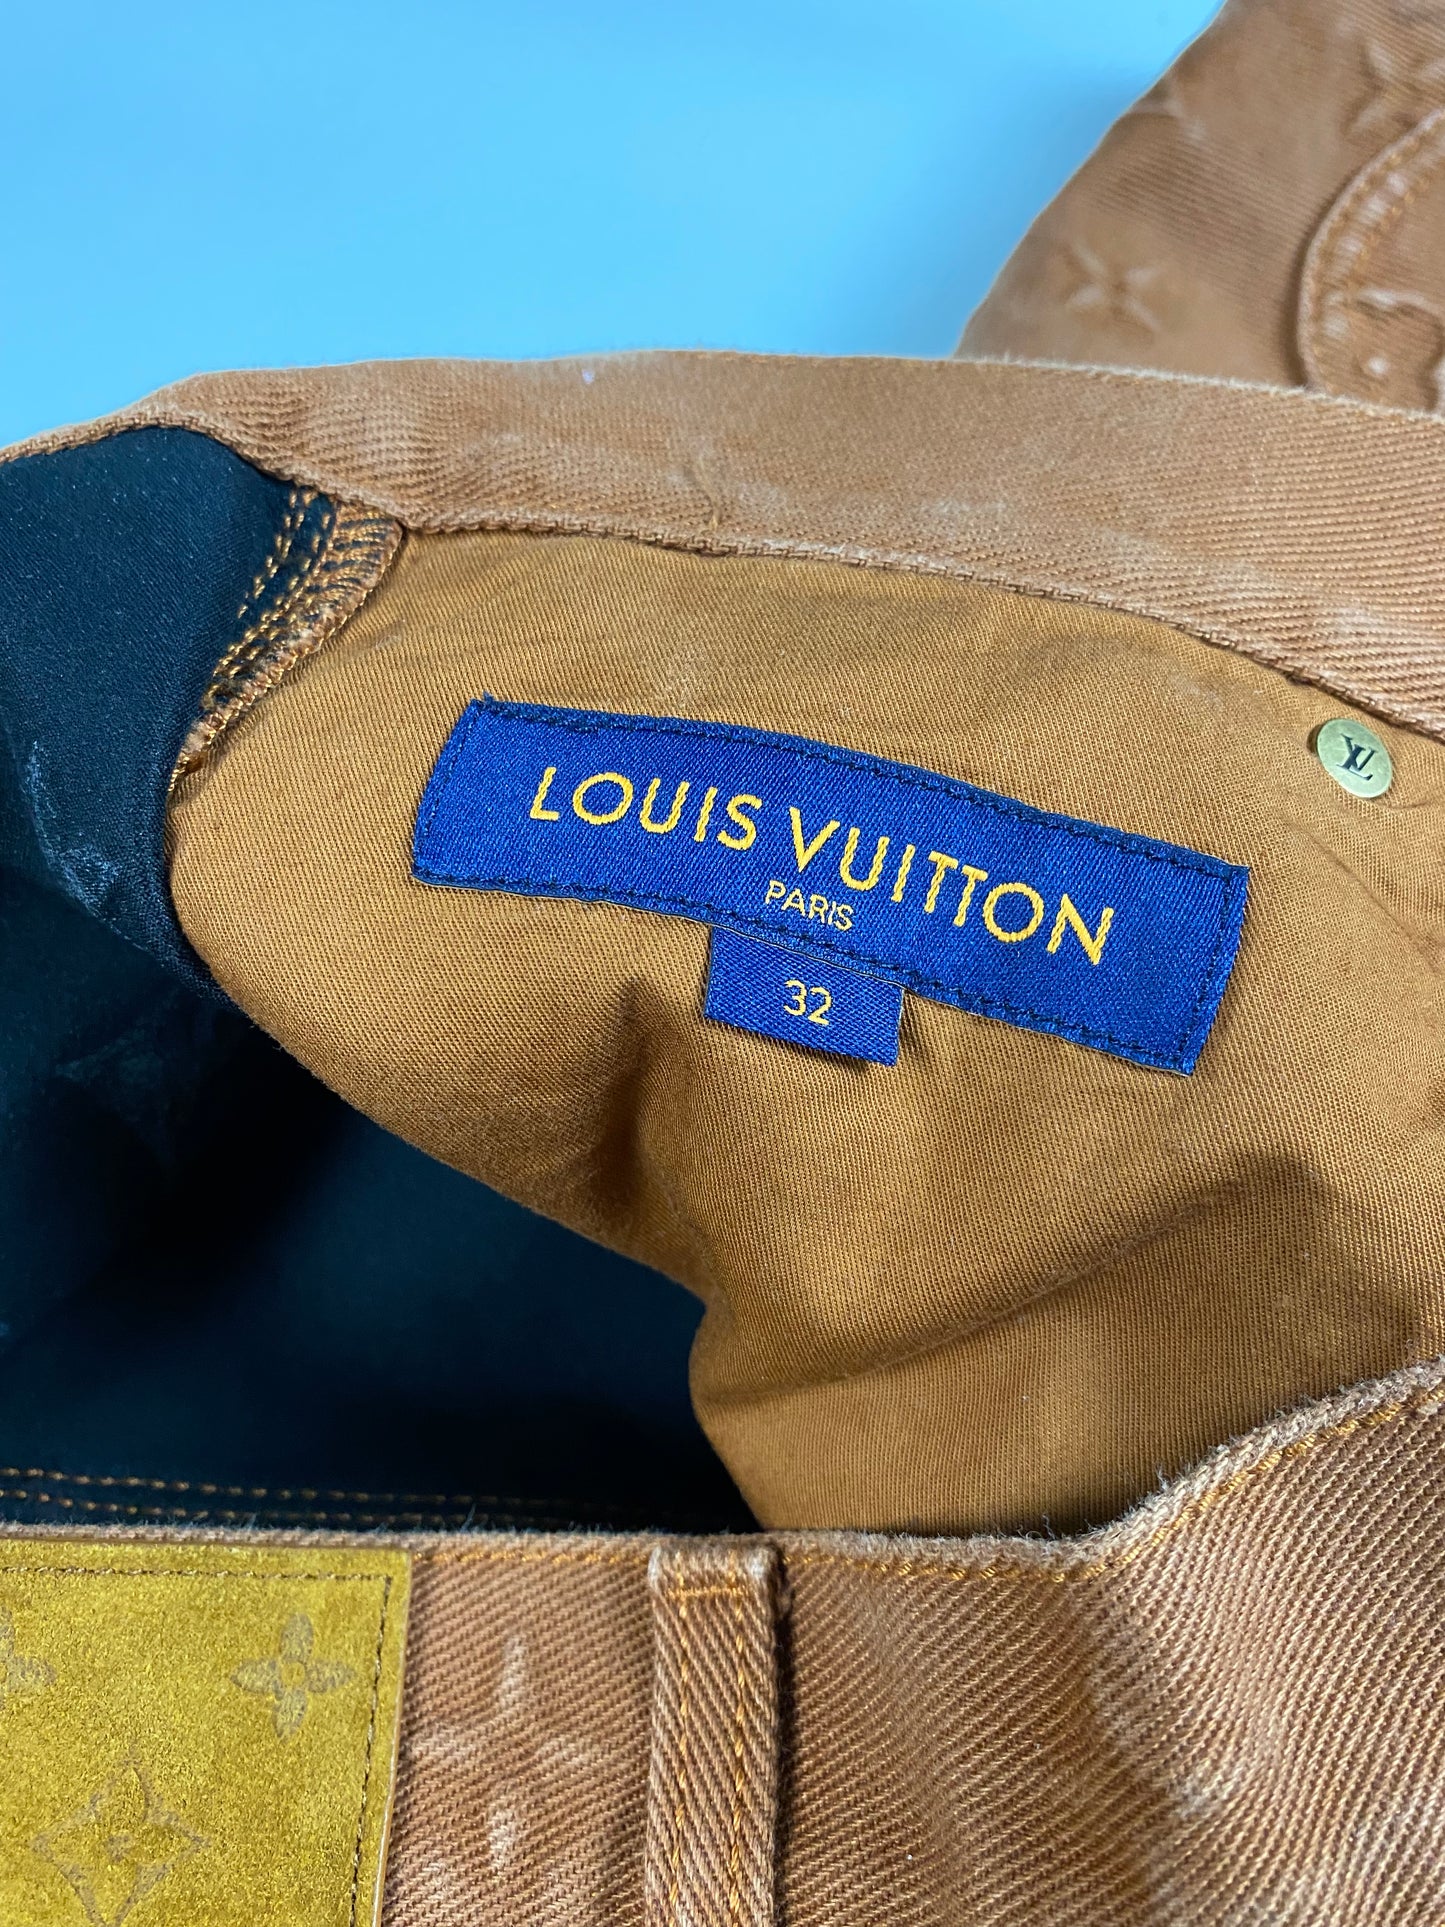 Louis Vuitton Louis Vuitton Virgil Abloh baggy jeans